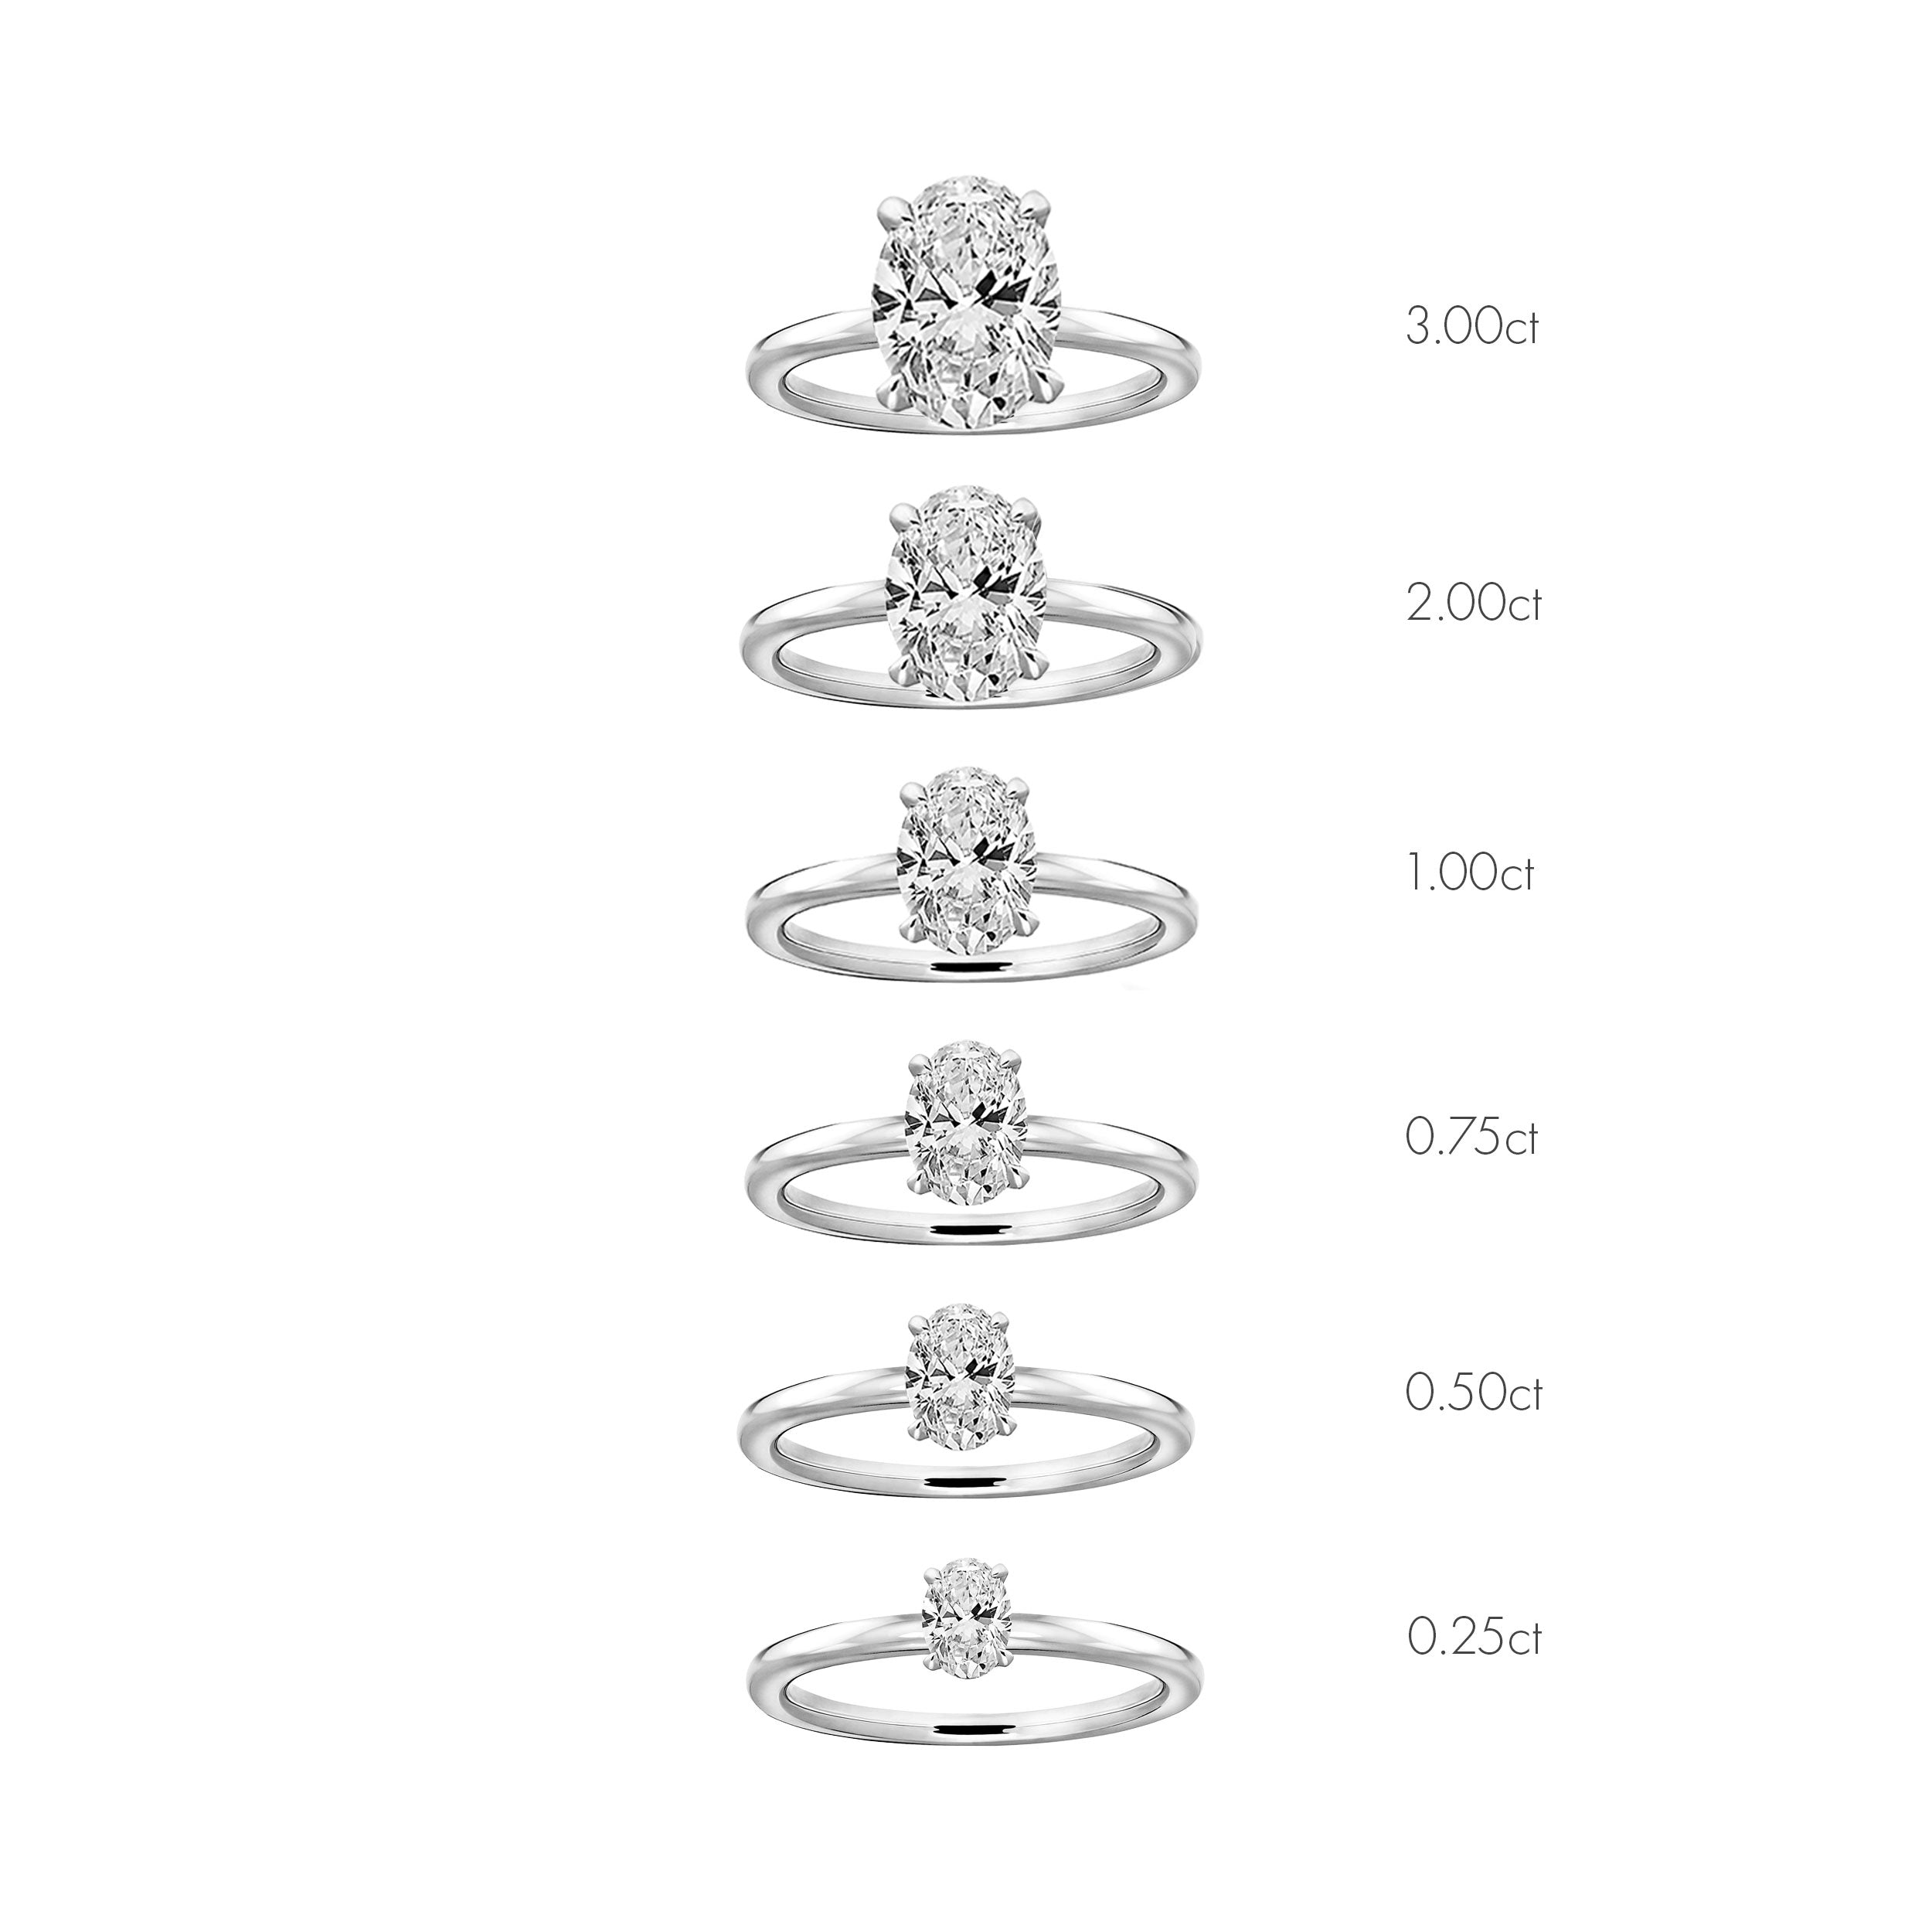 Siro Oval diamond ring platinum